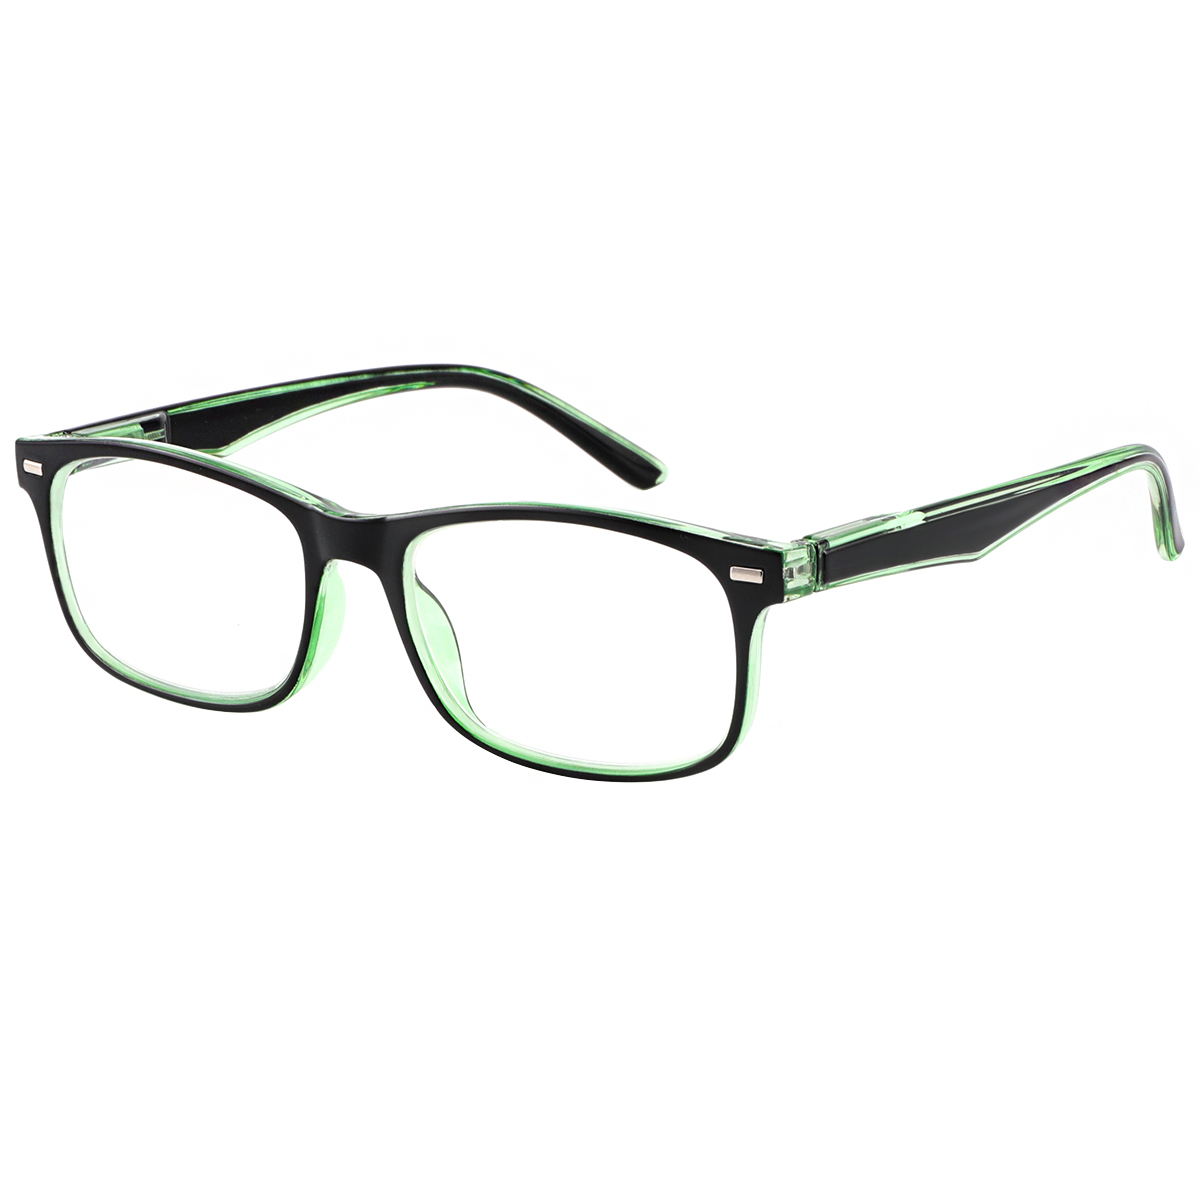 Elymais - Rectangle Green Reading Glasses for Men & Women